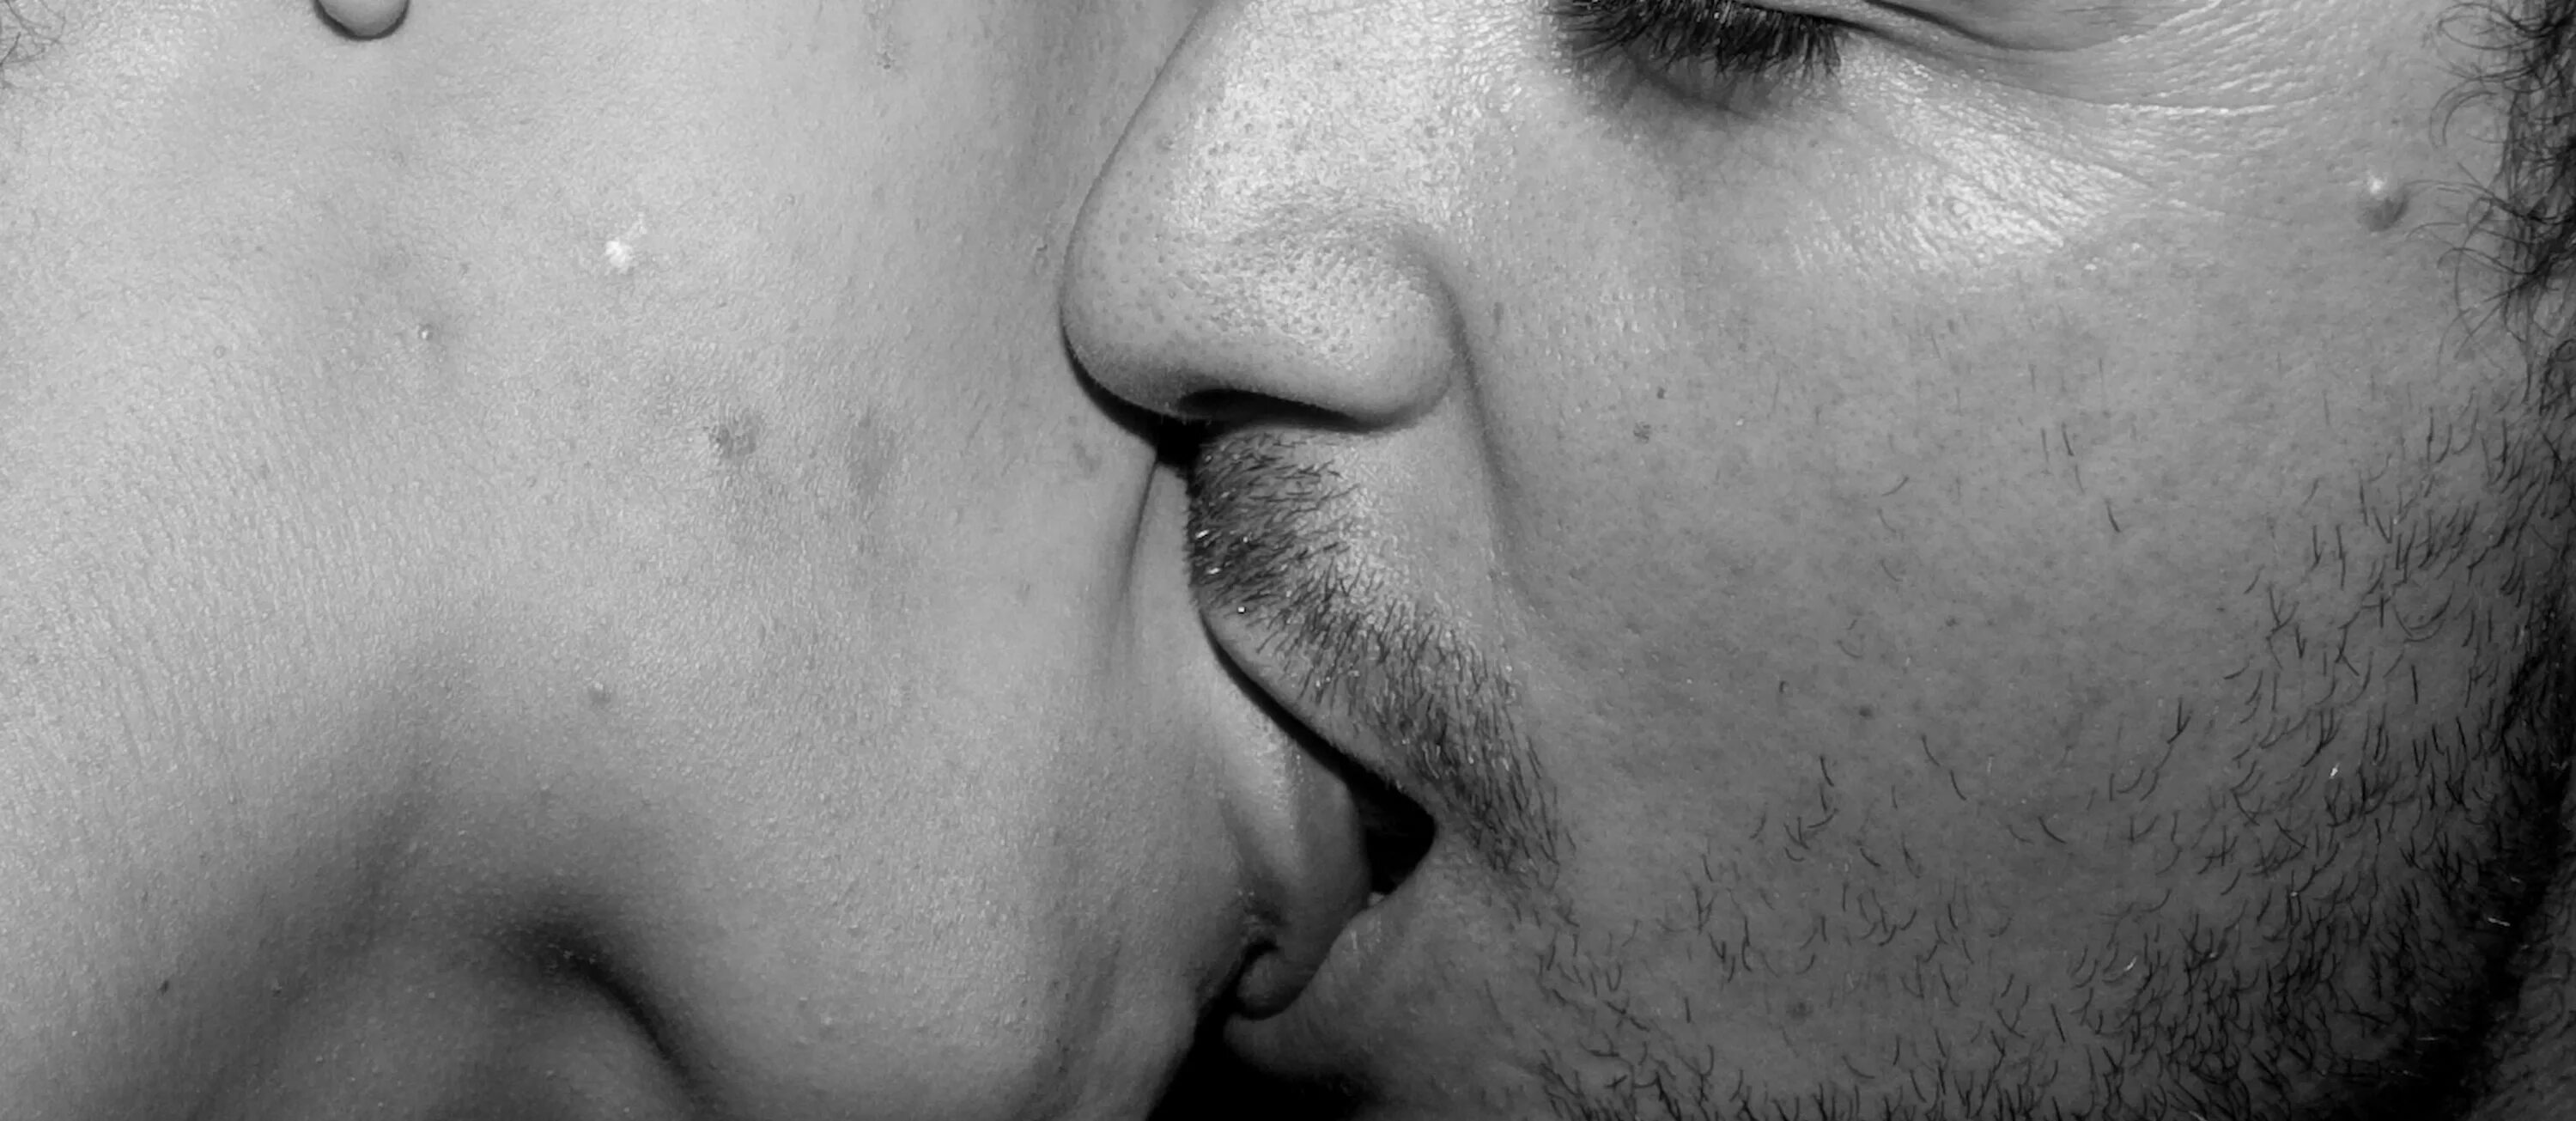 Поцелуй вблизи. Поцелуй крупно. Мужской поцелуй. Поцелуй с языком. Волосатые лизать крупным